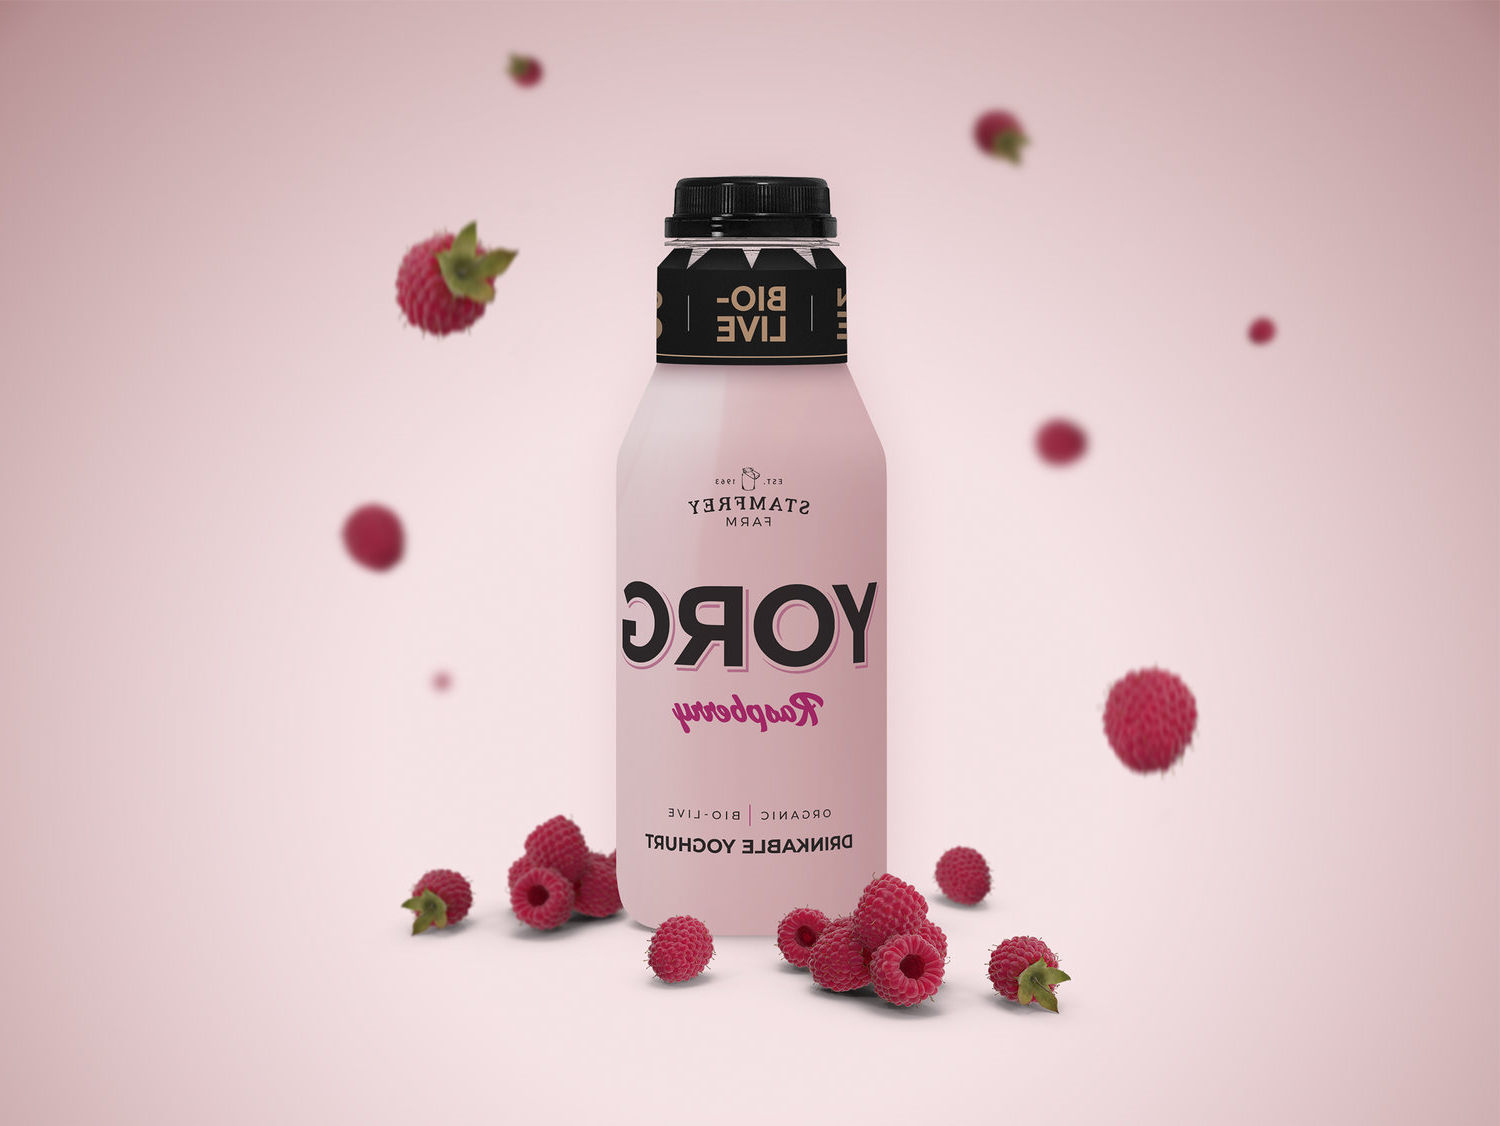 Yorg酸奶产品的品牌和包装设计(图4)